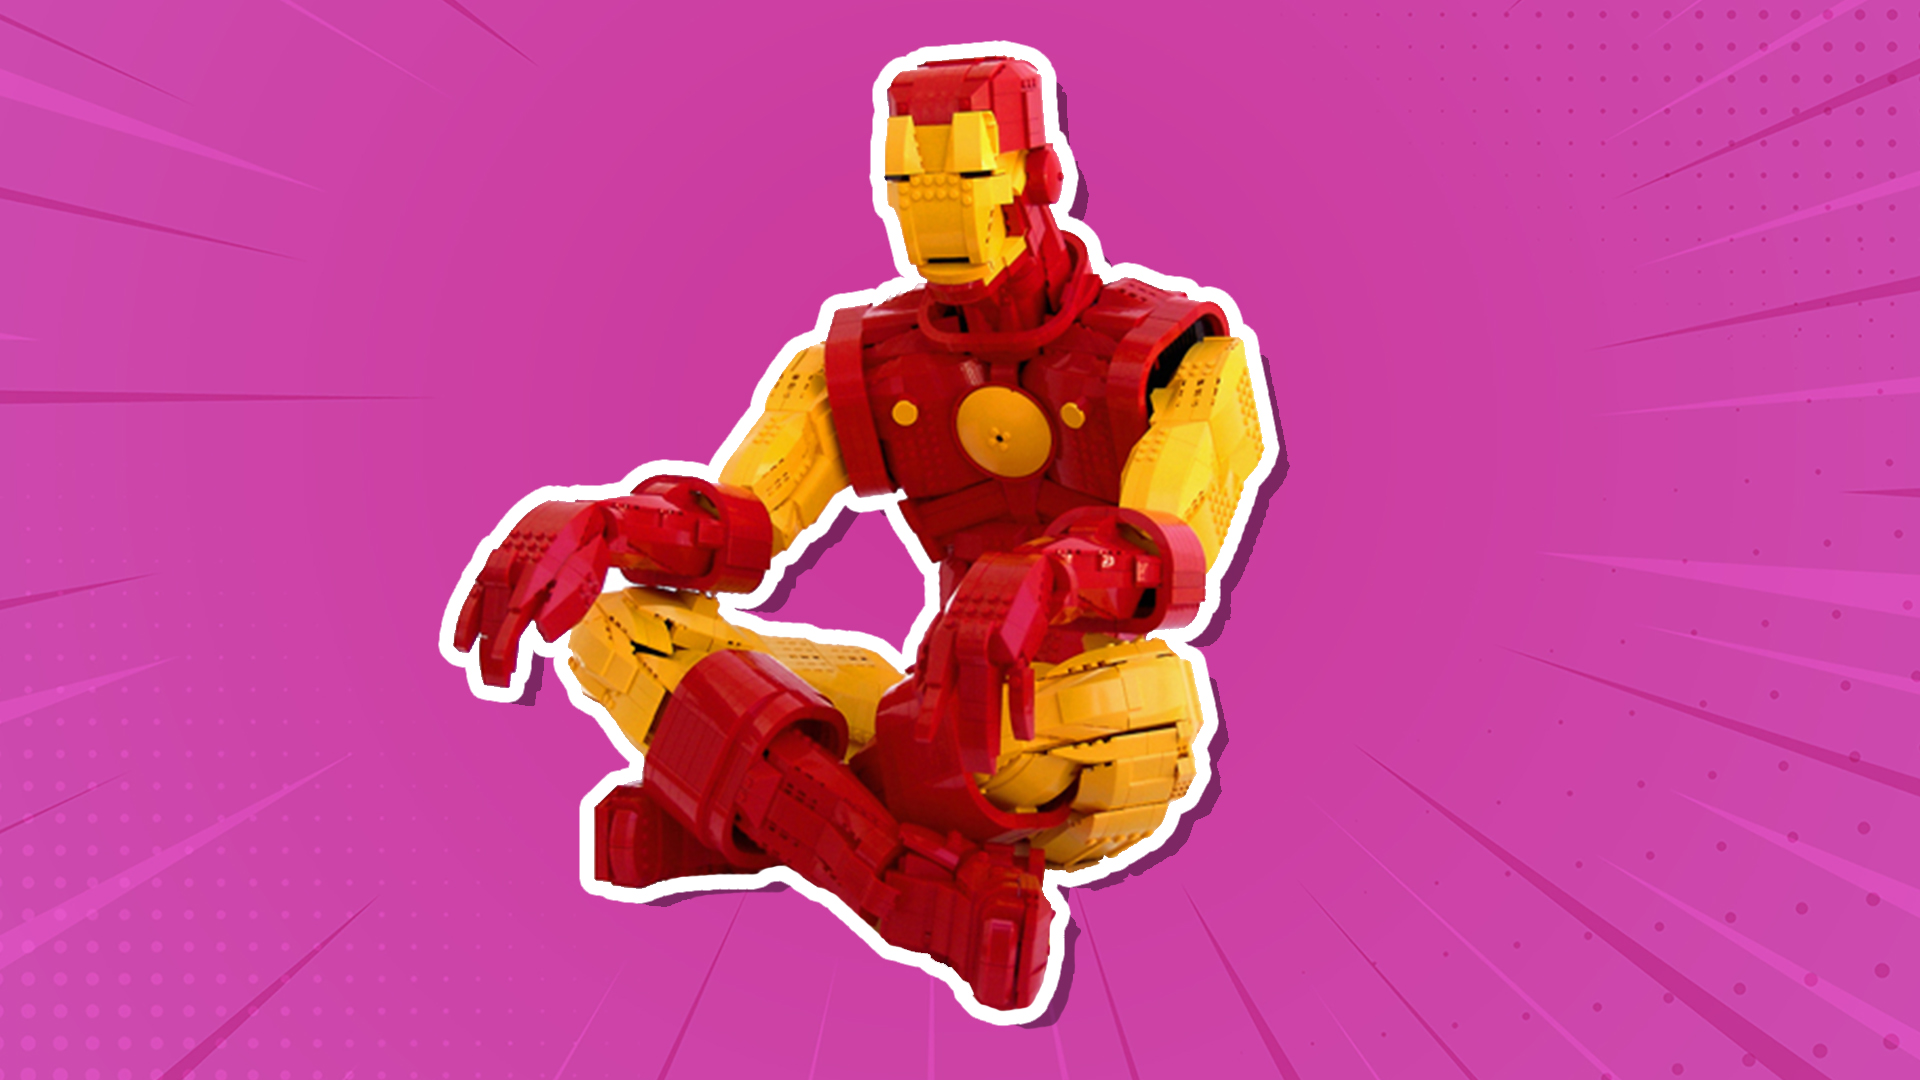 A massive LEGO Iron Man